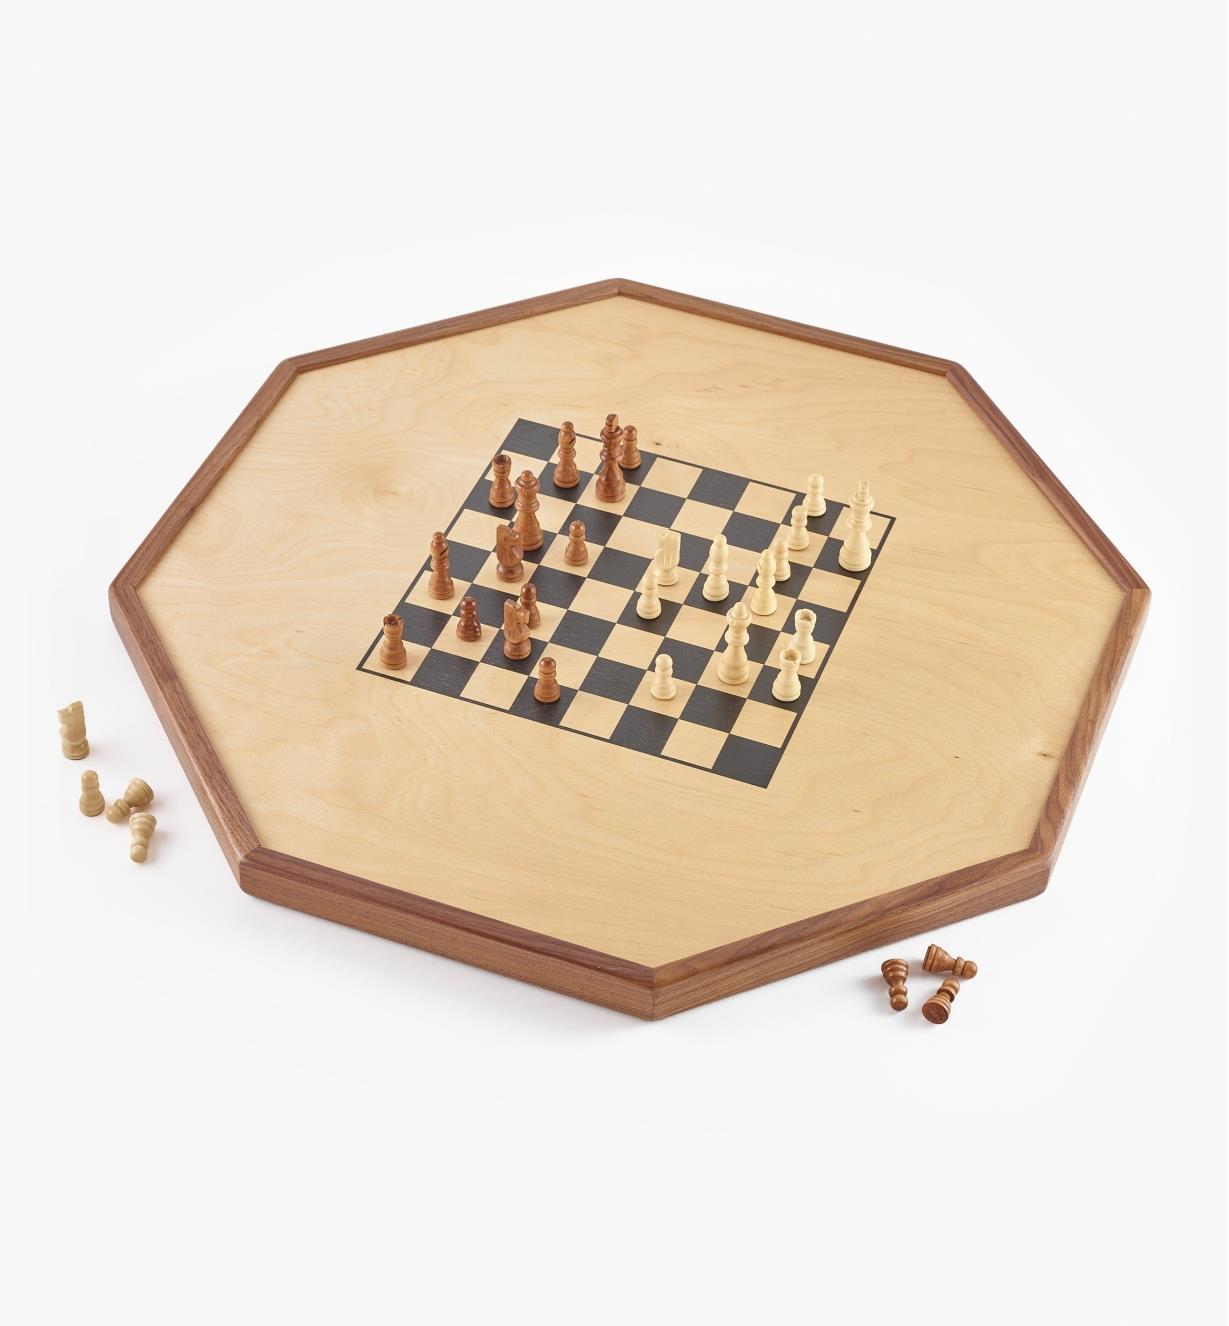 Checker/chess side of Deluxe Crokinole/Checker/Chess Board